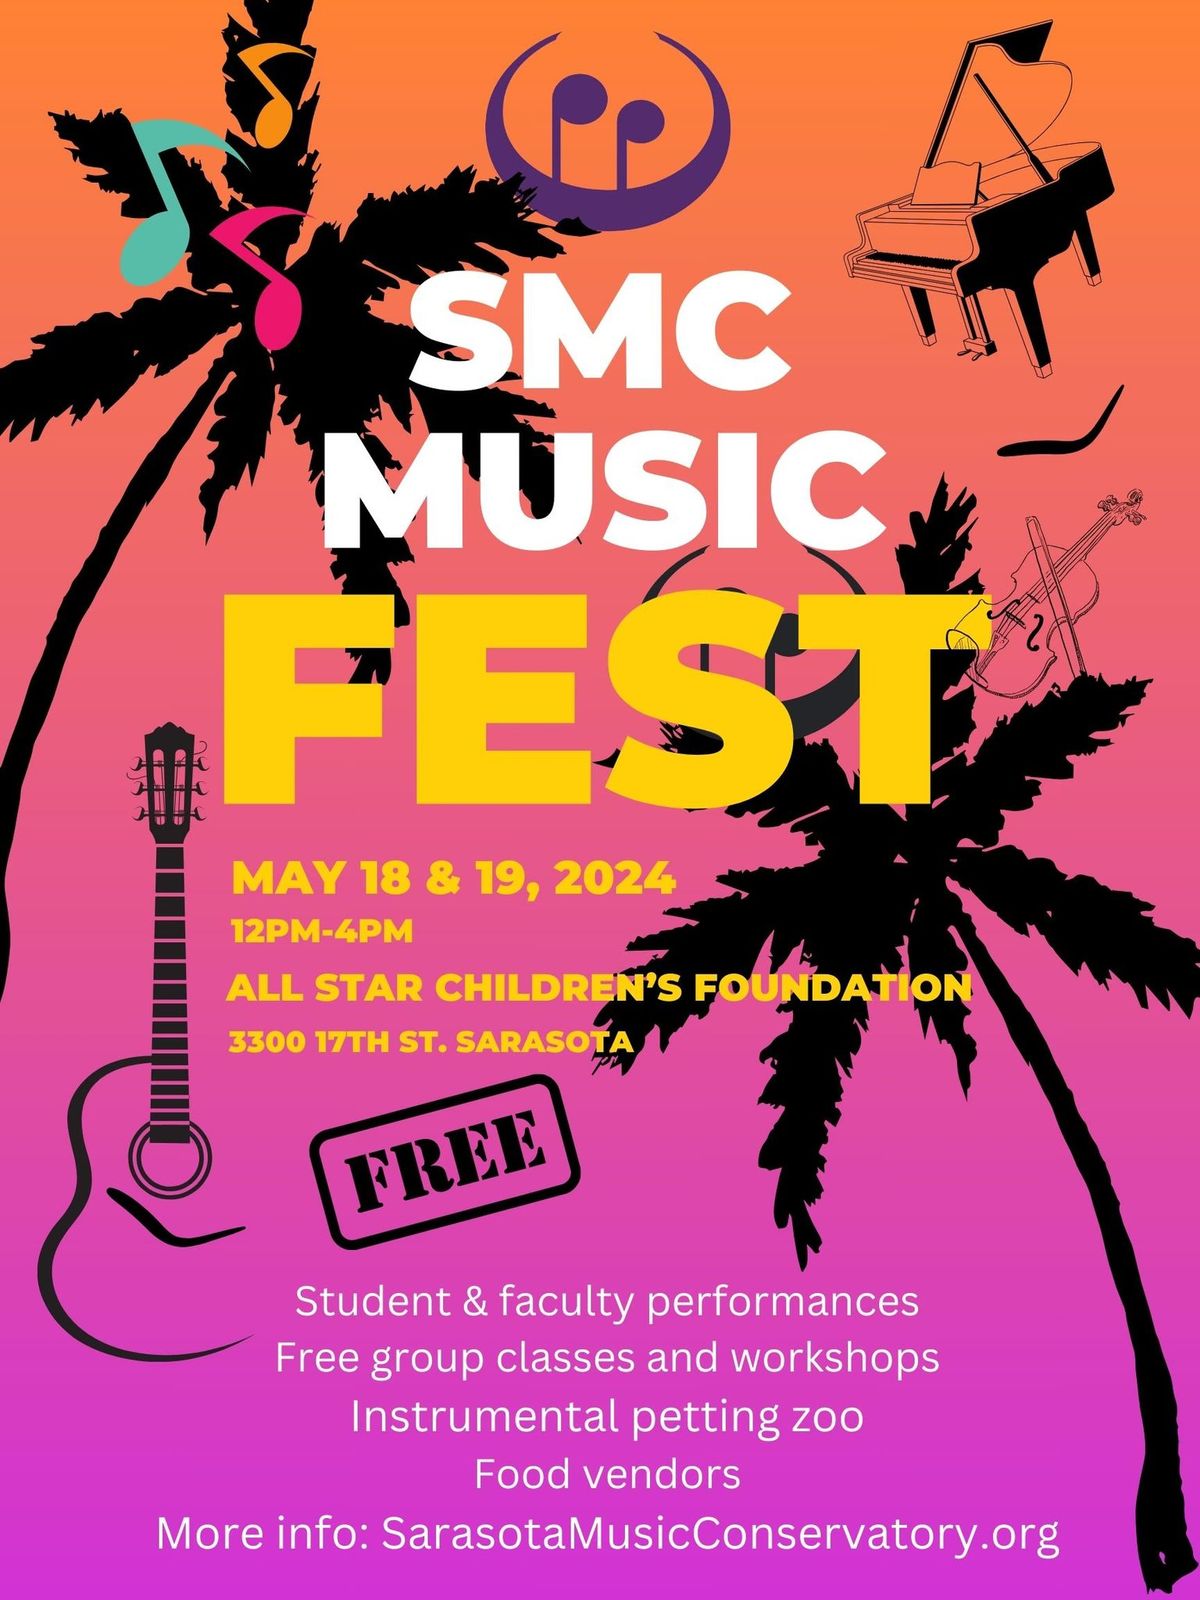 SMC Music Fest